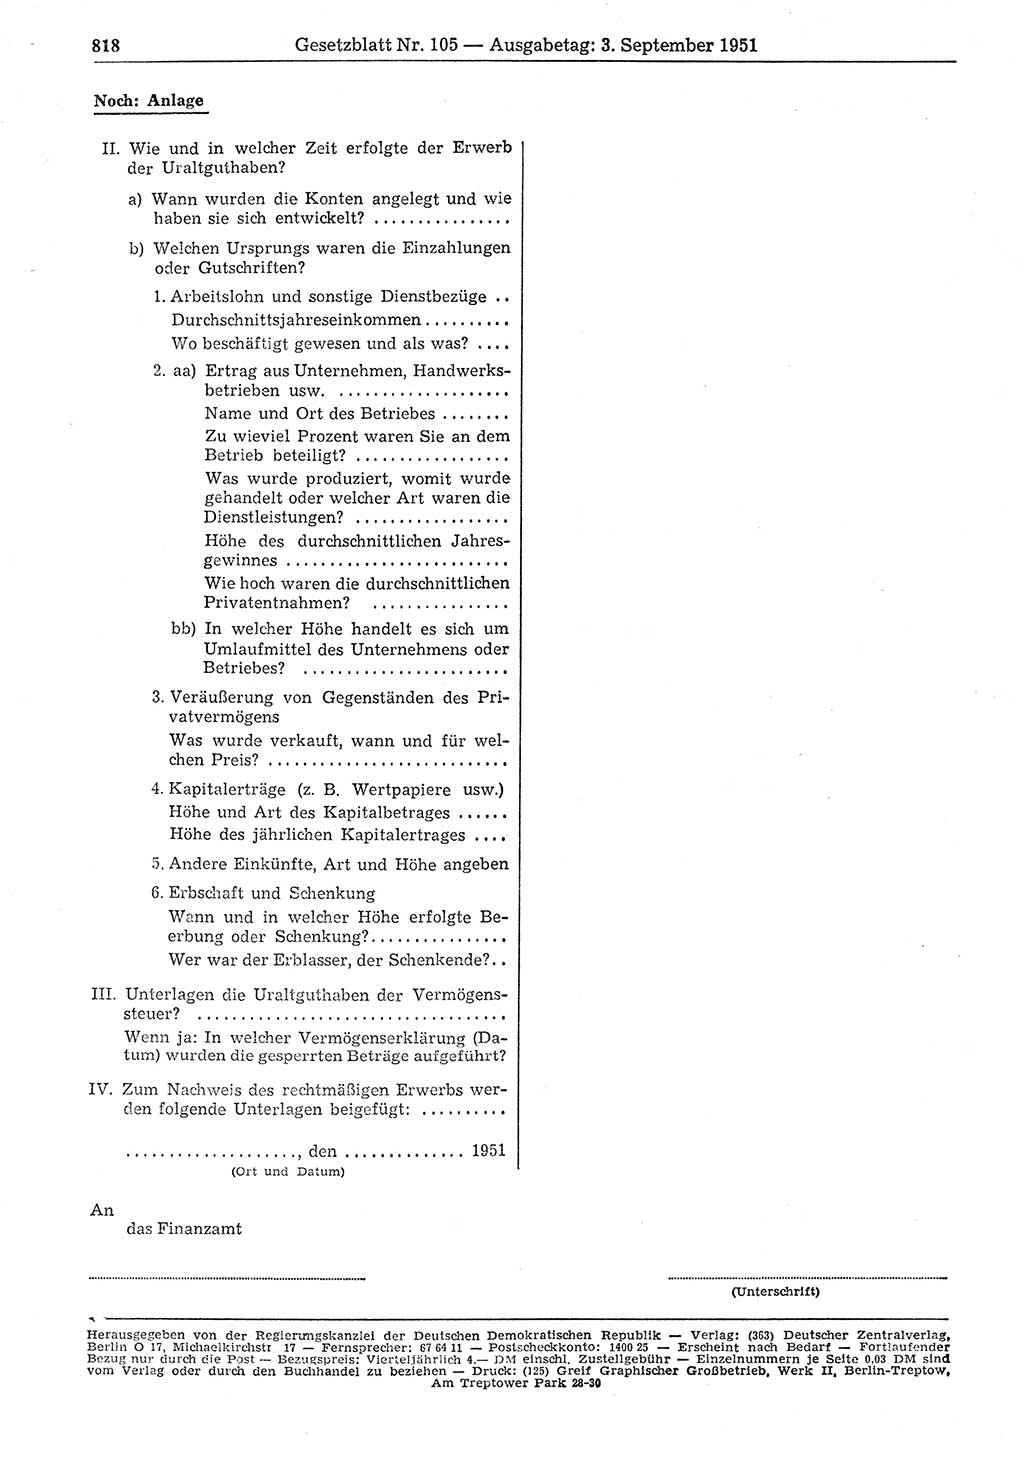 Gesetzblatt (GBl.) der Deutschen Demokratischen Republik (DDR) 1951, Seite 818 (GBl. DDR 1951, S. 818)